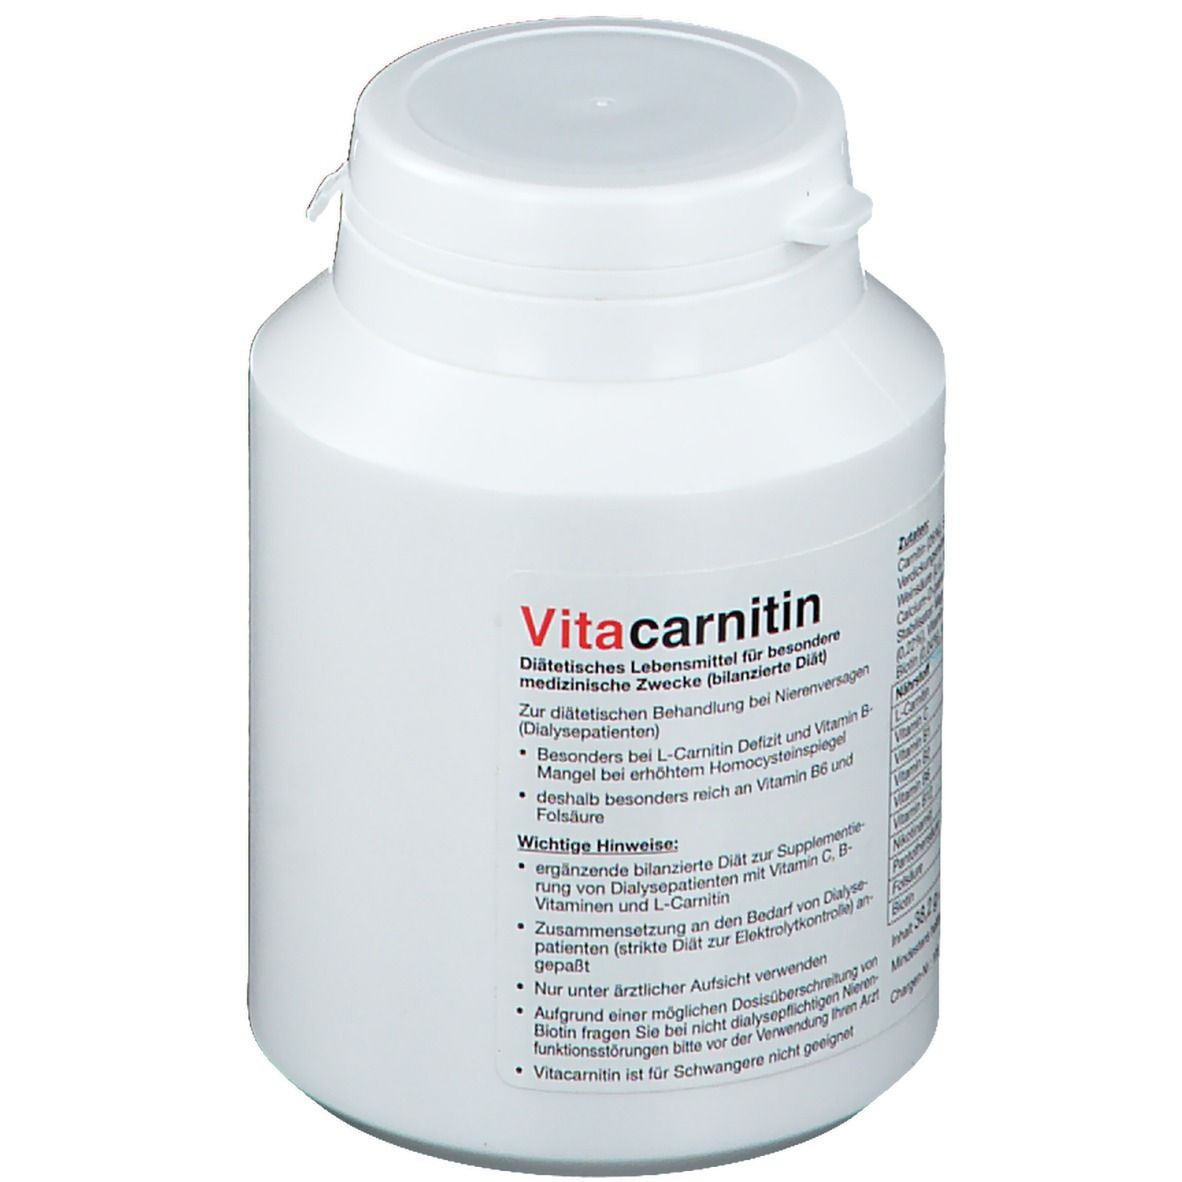 VITAcarnitin